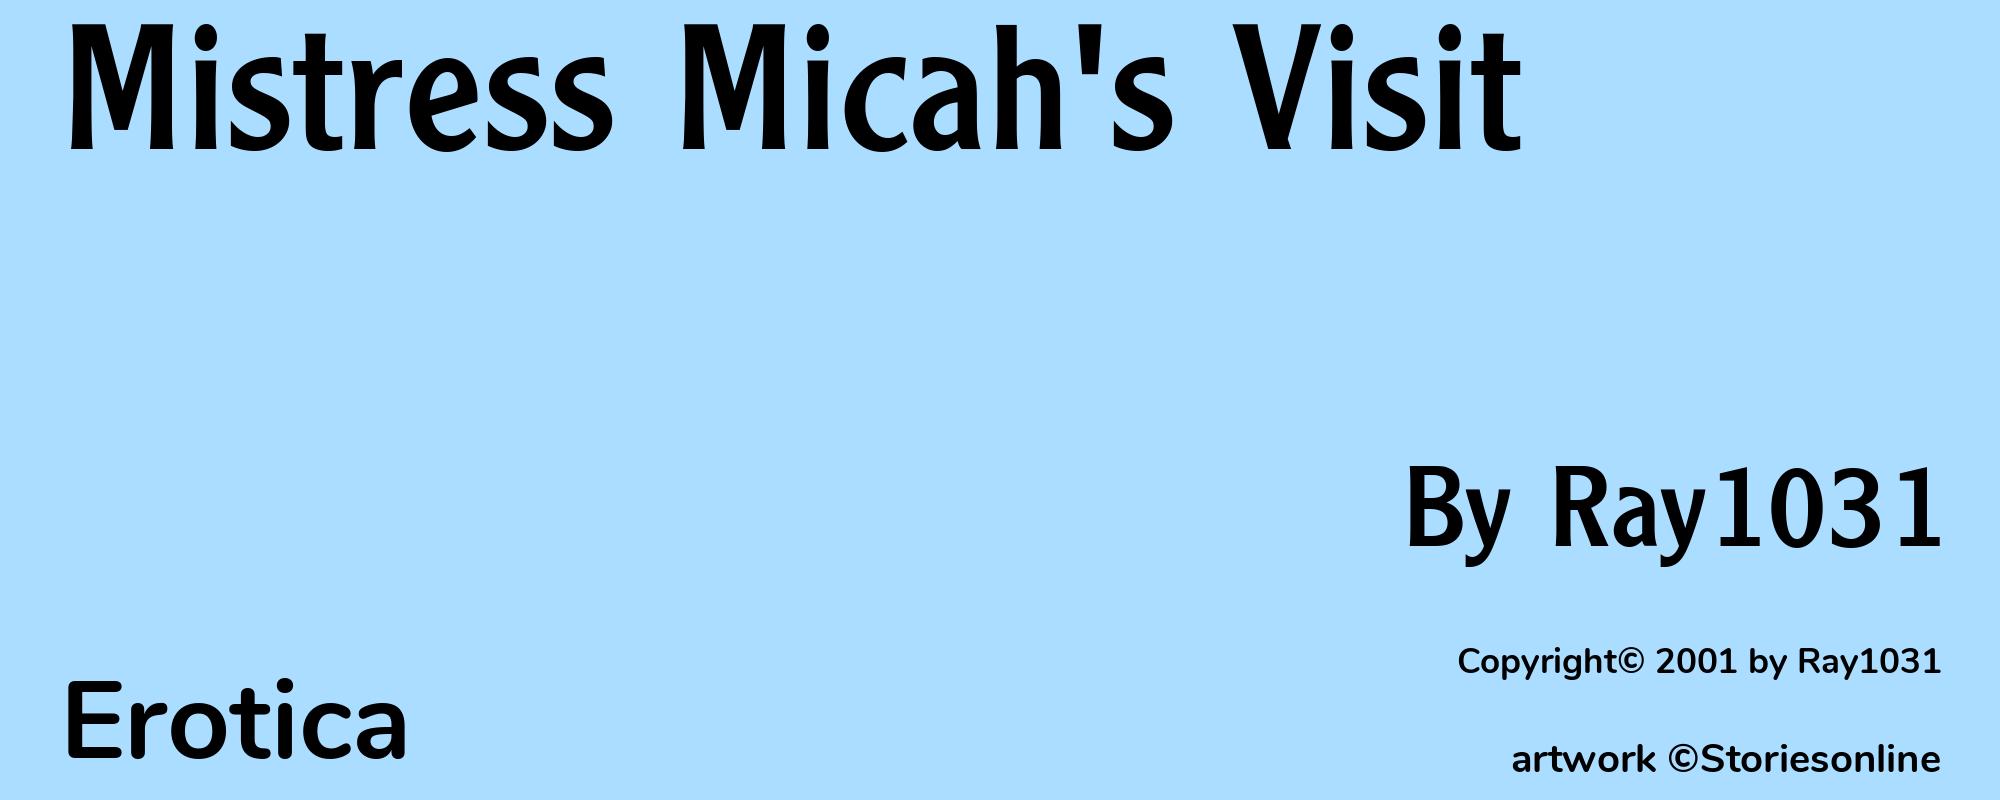 Mistress Micah's Visit - Cover